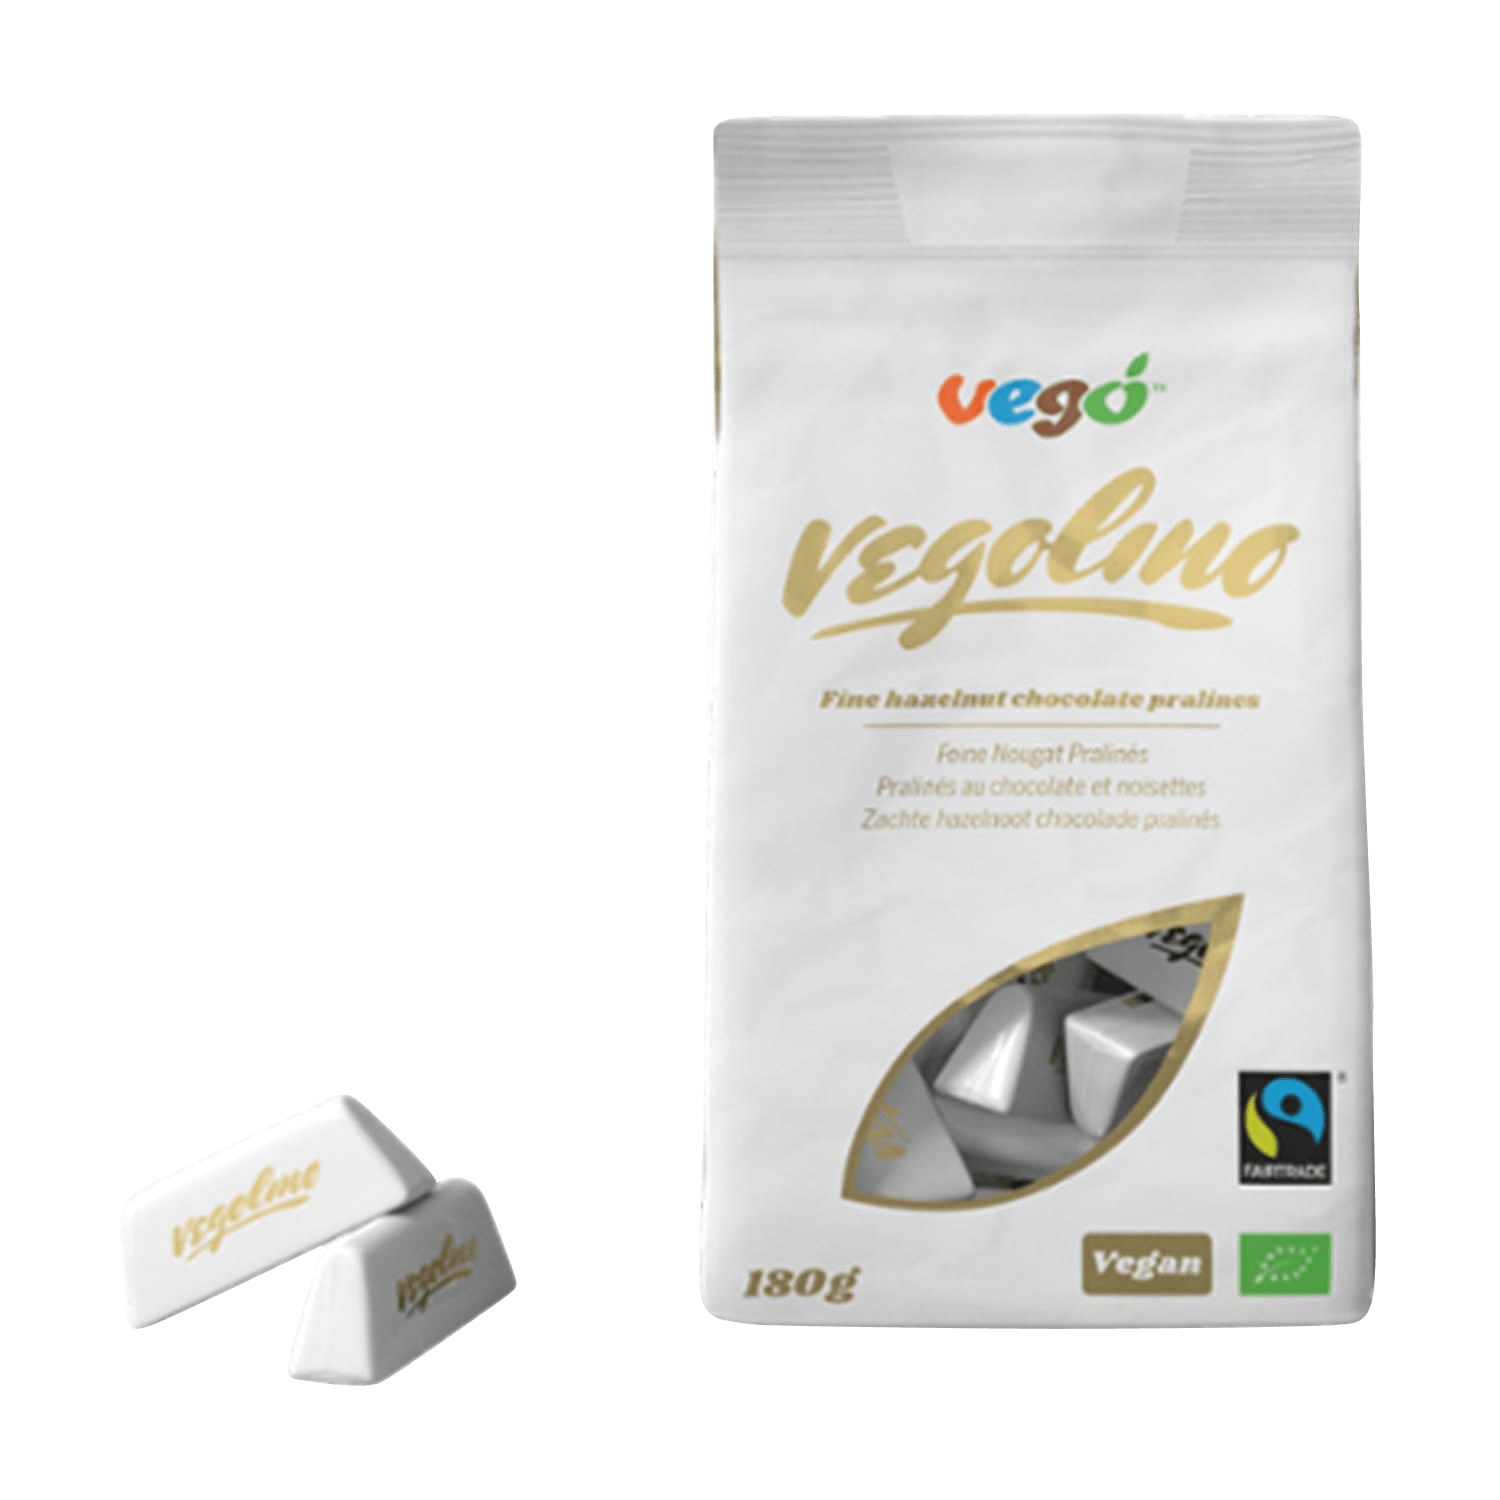 Vegolino  Chocs, Organic, 180g